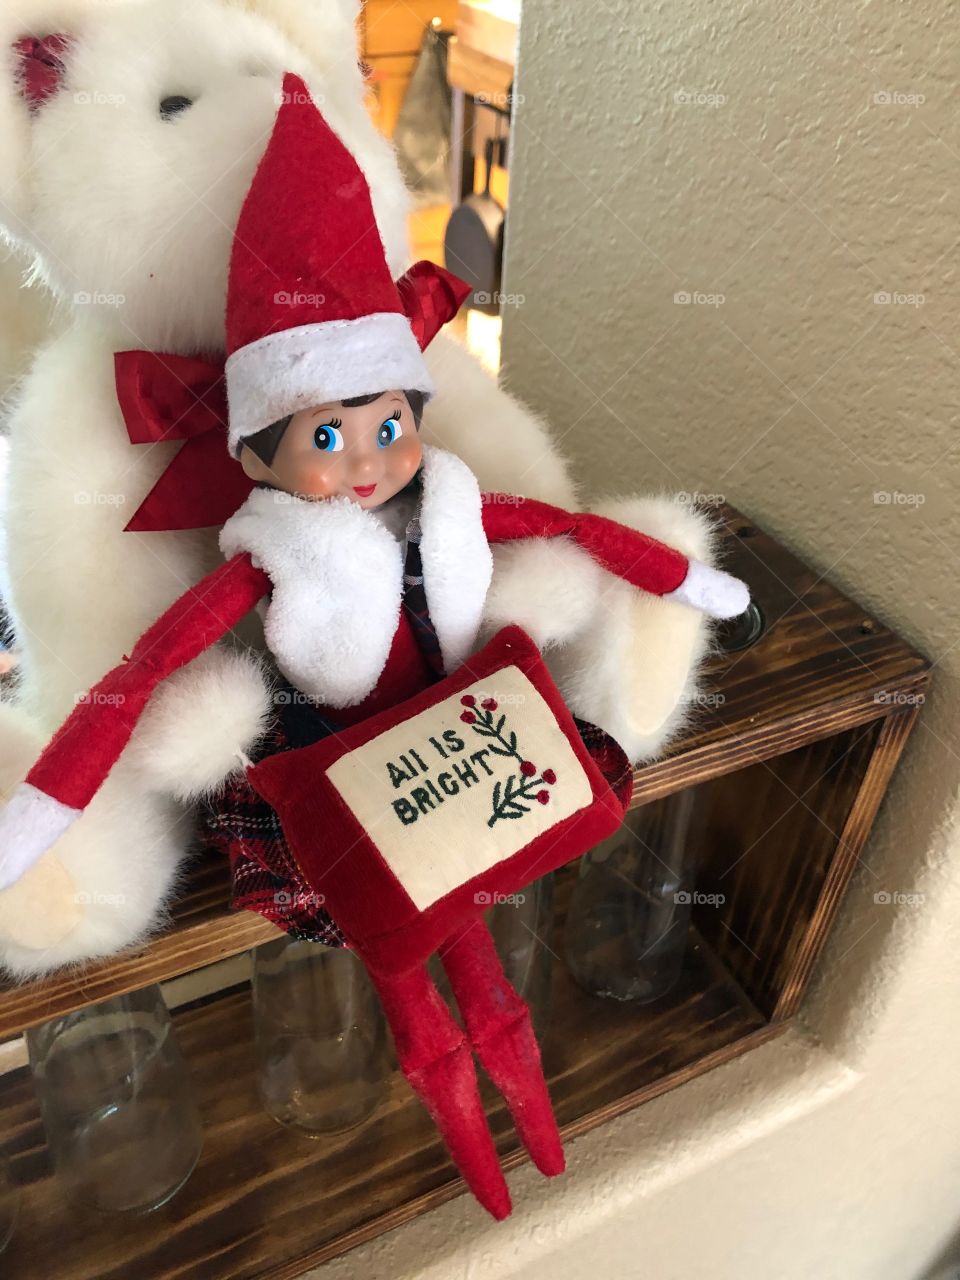 Elf on a shelf